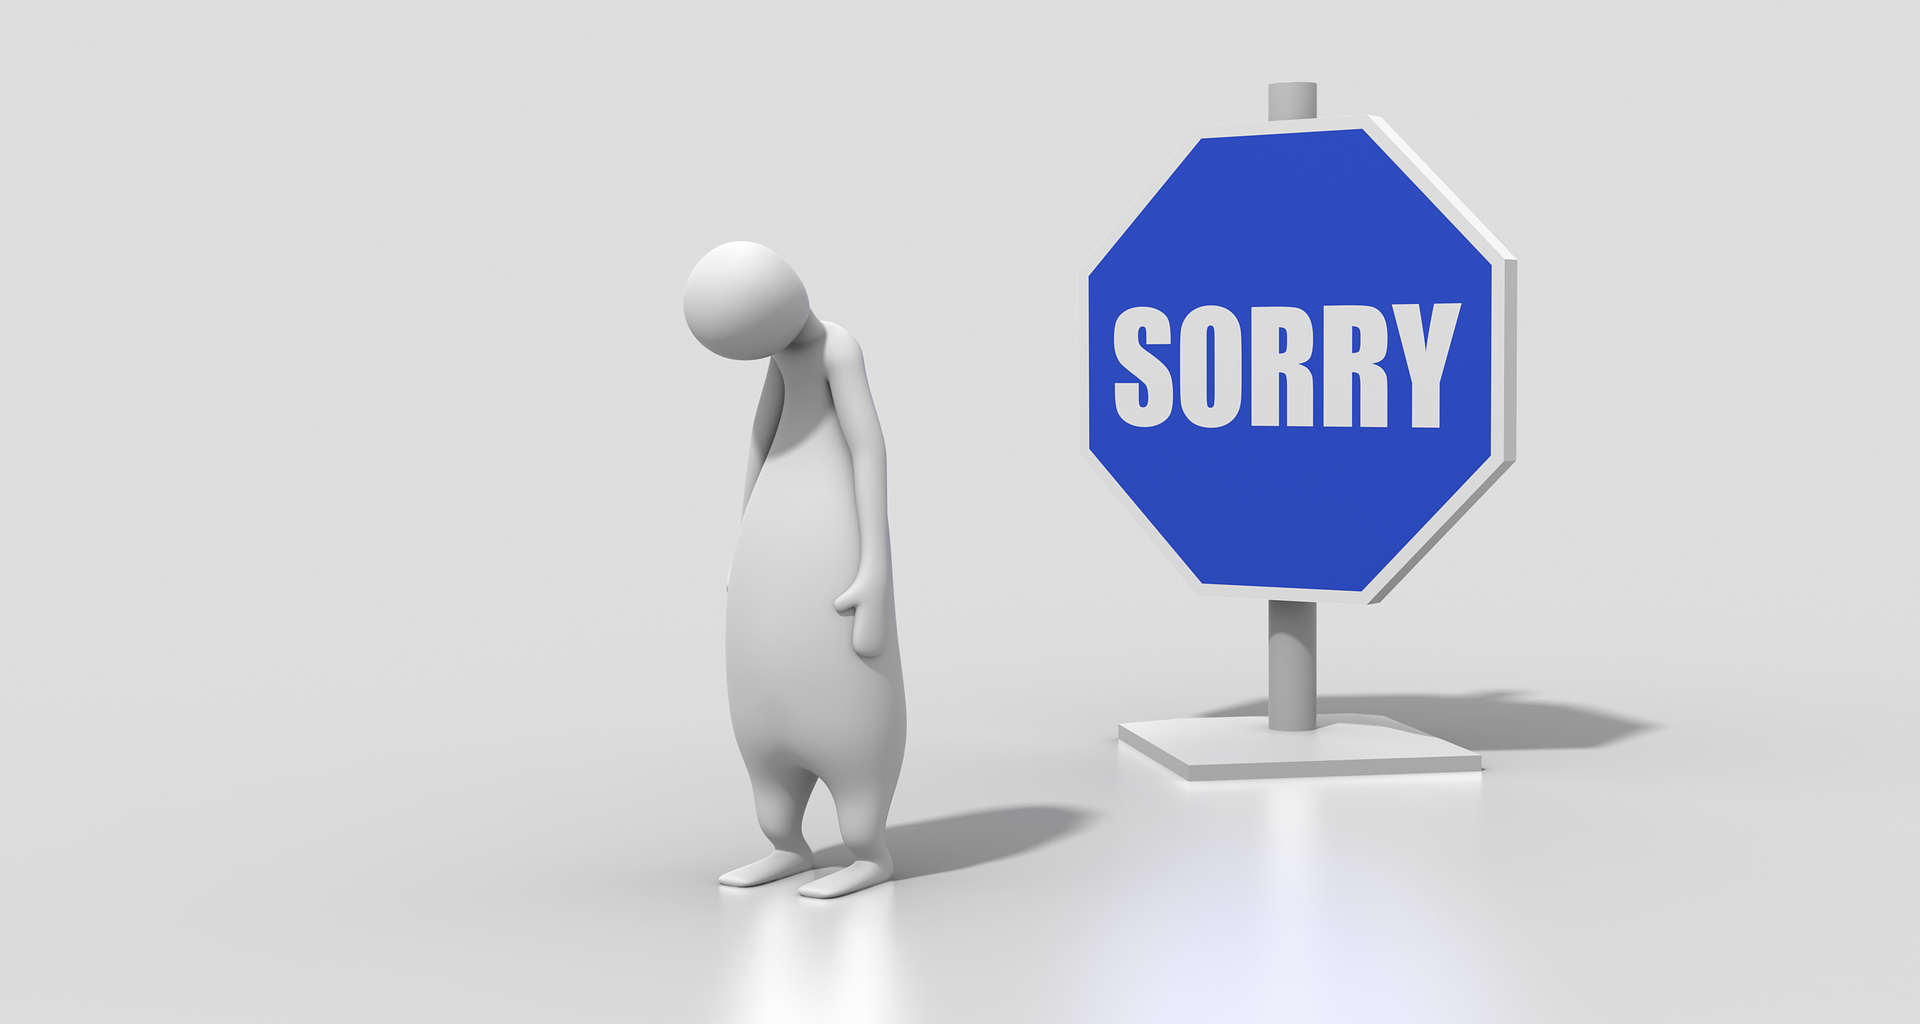 personnage désolé à côté d'un panneau sur lequel il est écrit "sorry"